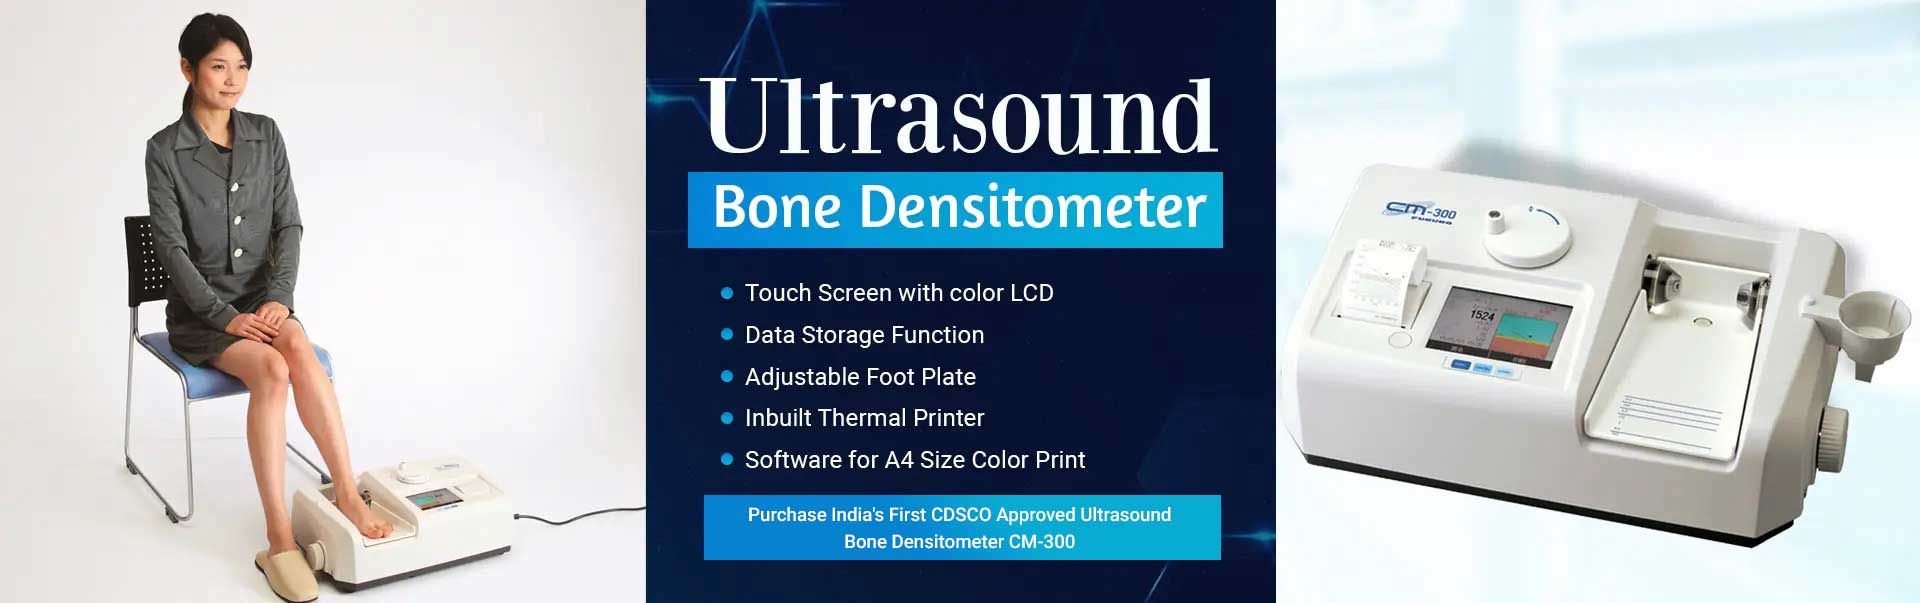 Ultrasound Bone Densitometer Manufacturers in Chandigarh